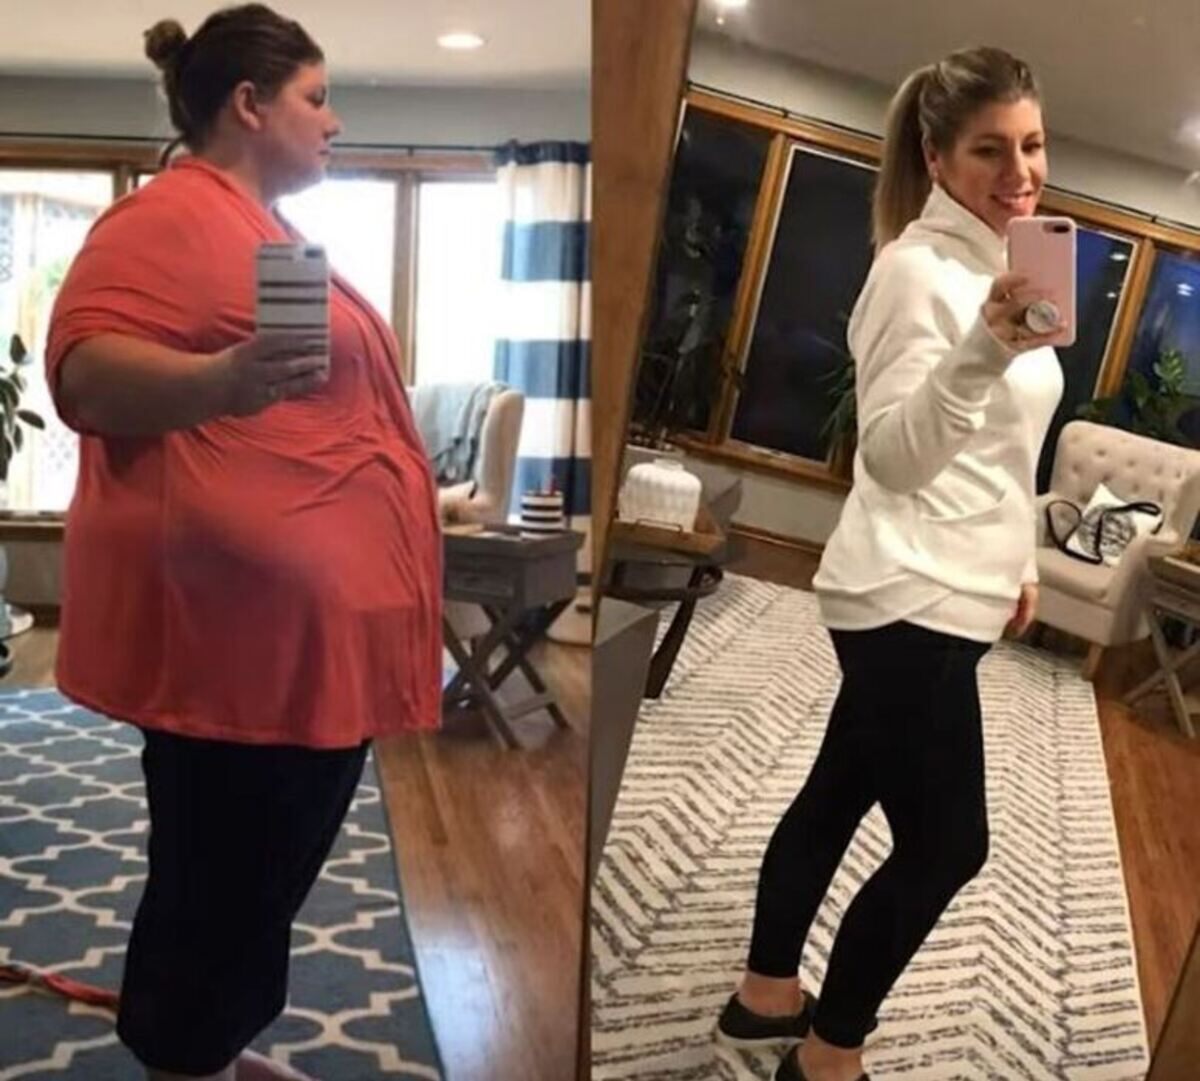 Po ciążach schudła 93 kg. Wprowadziła trzy konkretne zmiany w swojej diecie